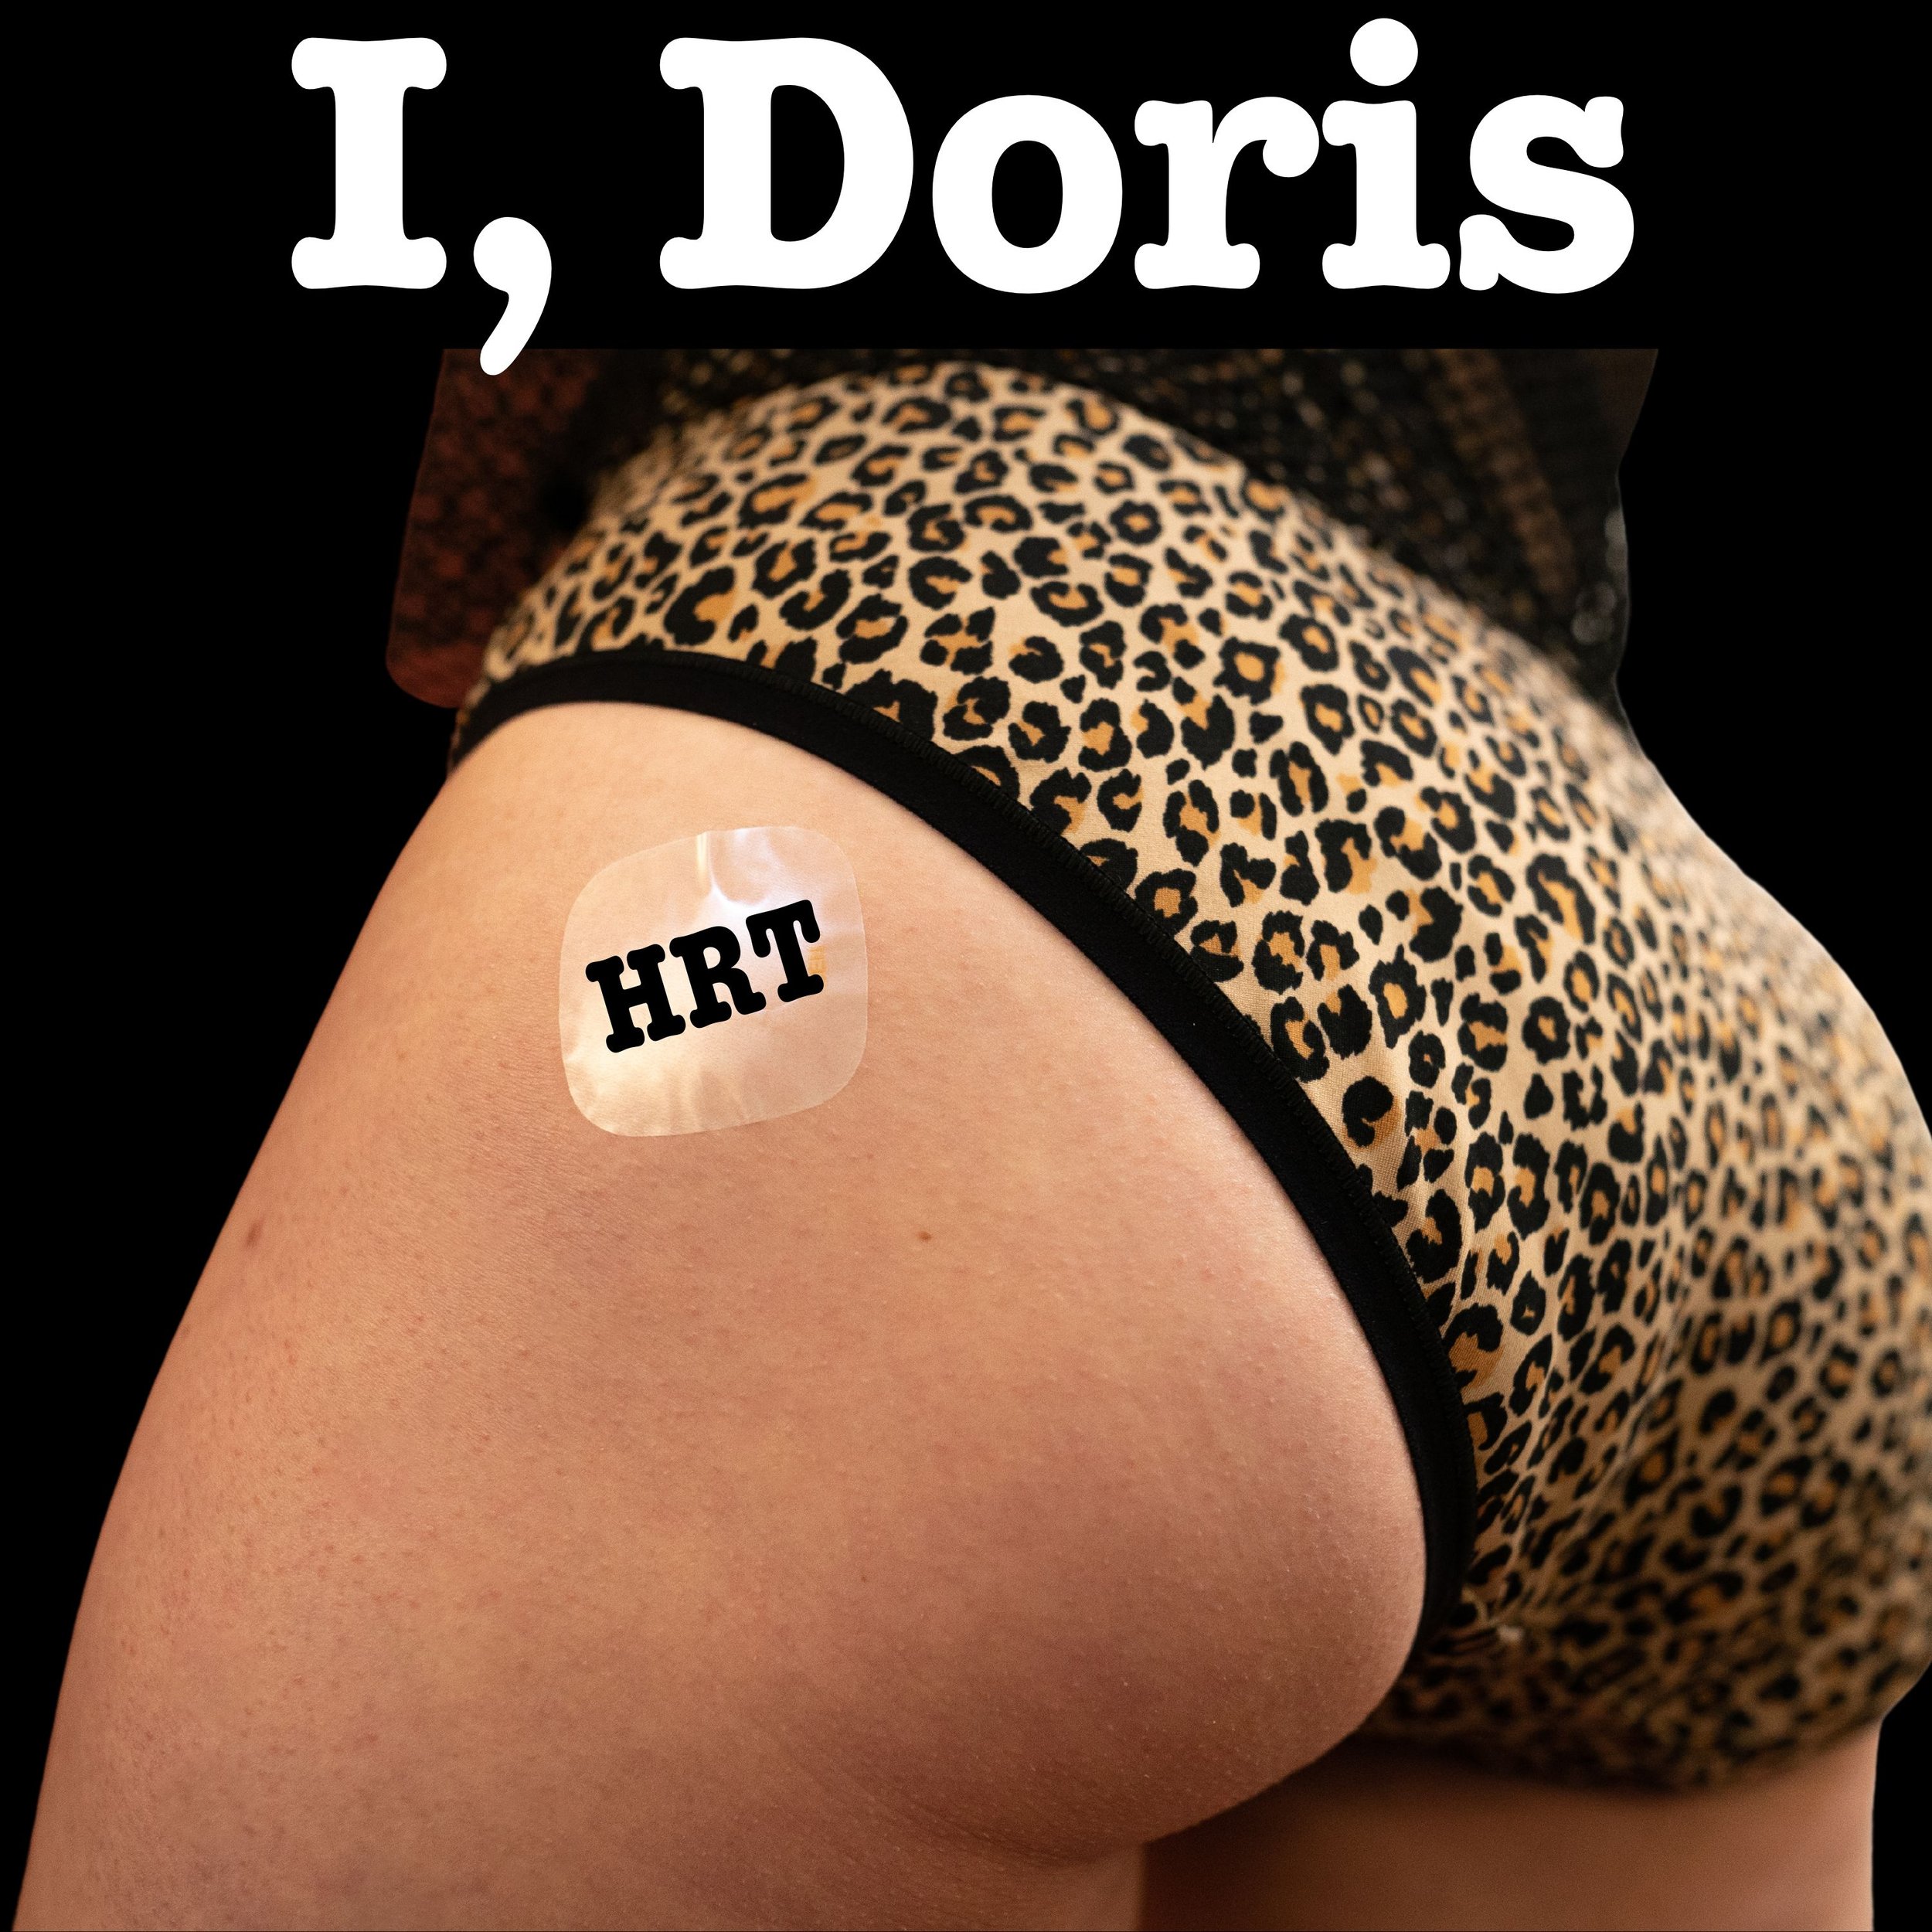 I, Doris